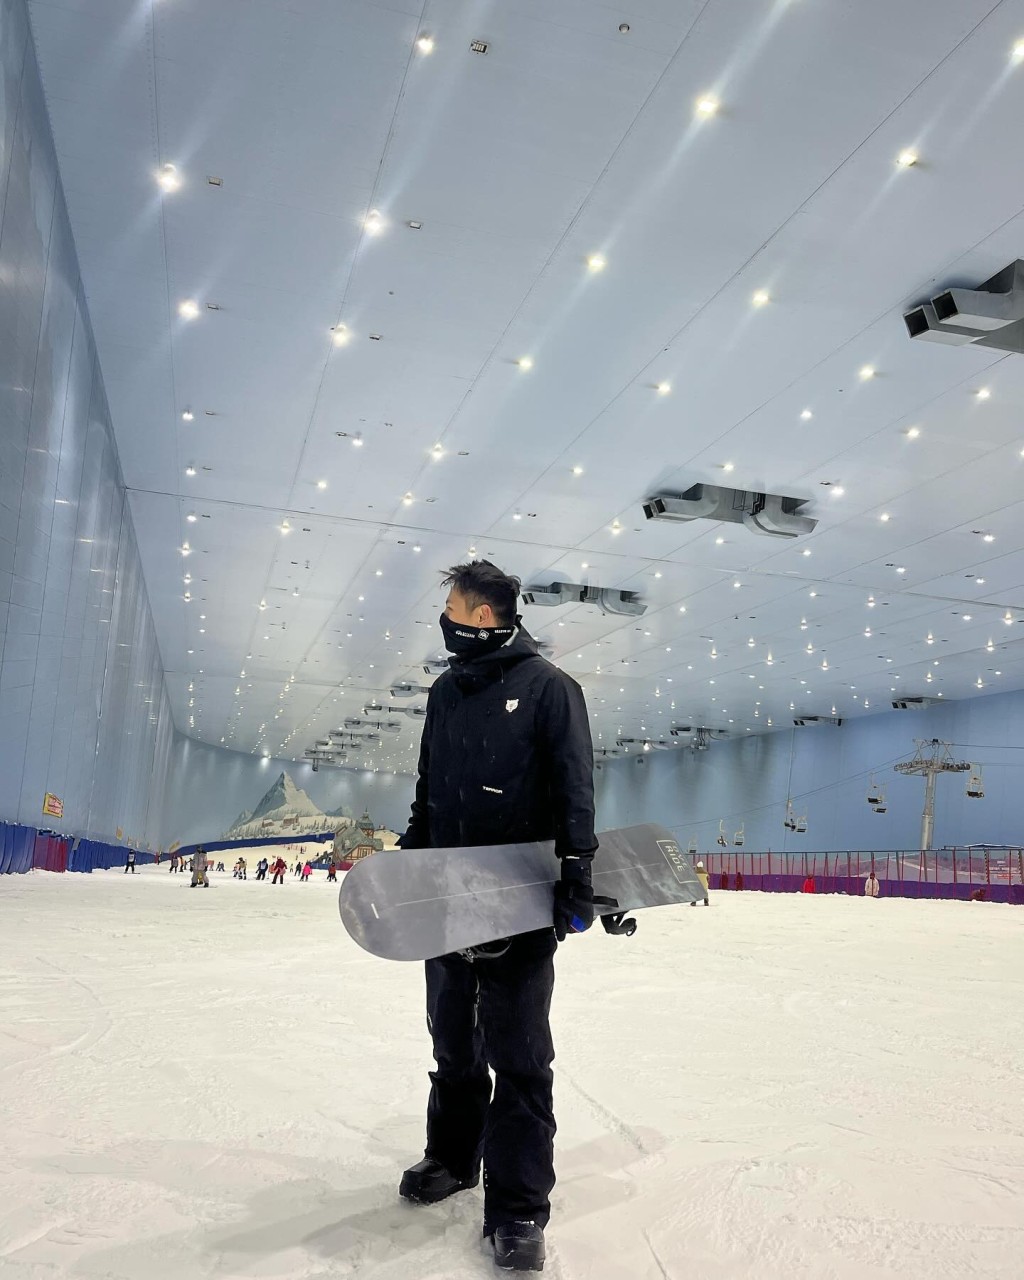 細佬David亦於社交網貼出滑雪初體驗照。